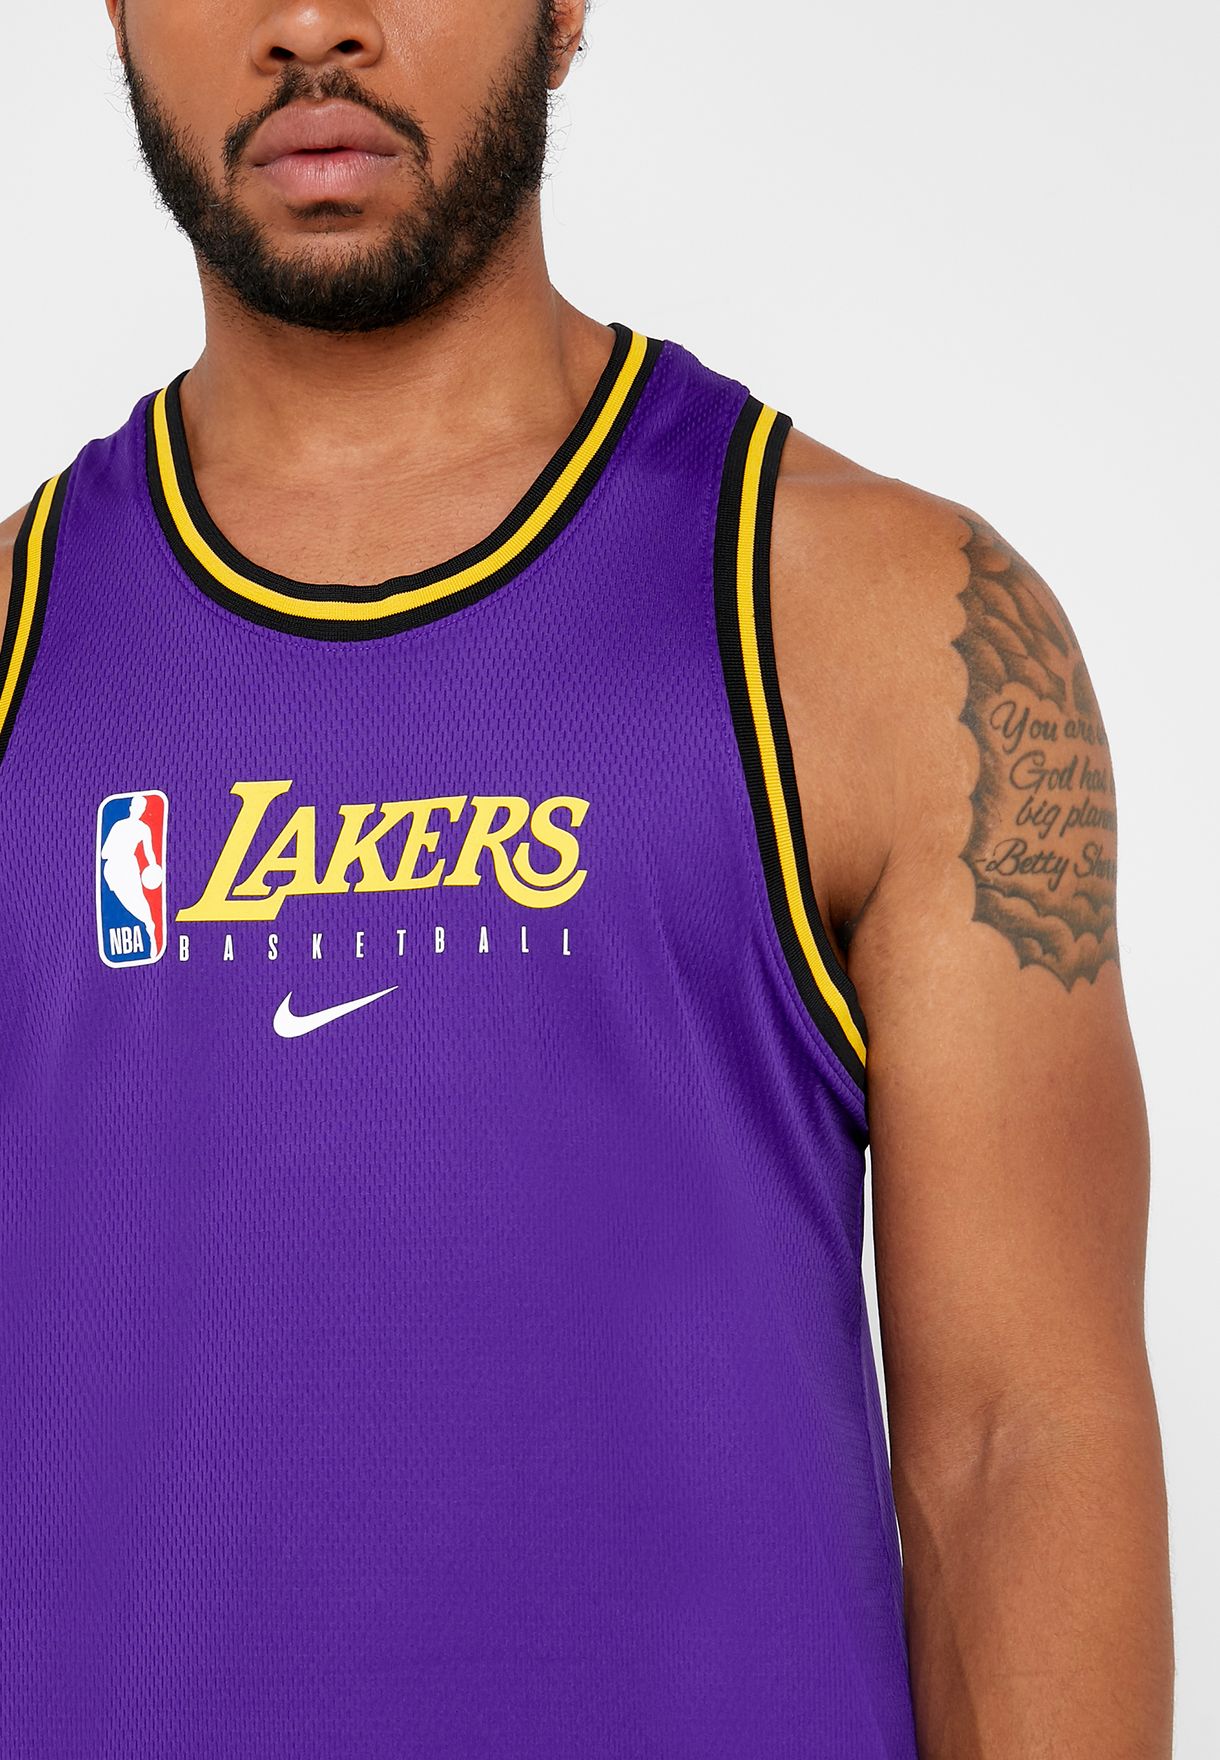 Los Angeles Lakers NBA crop top